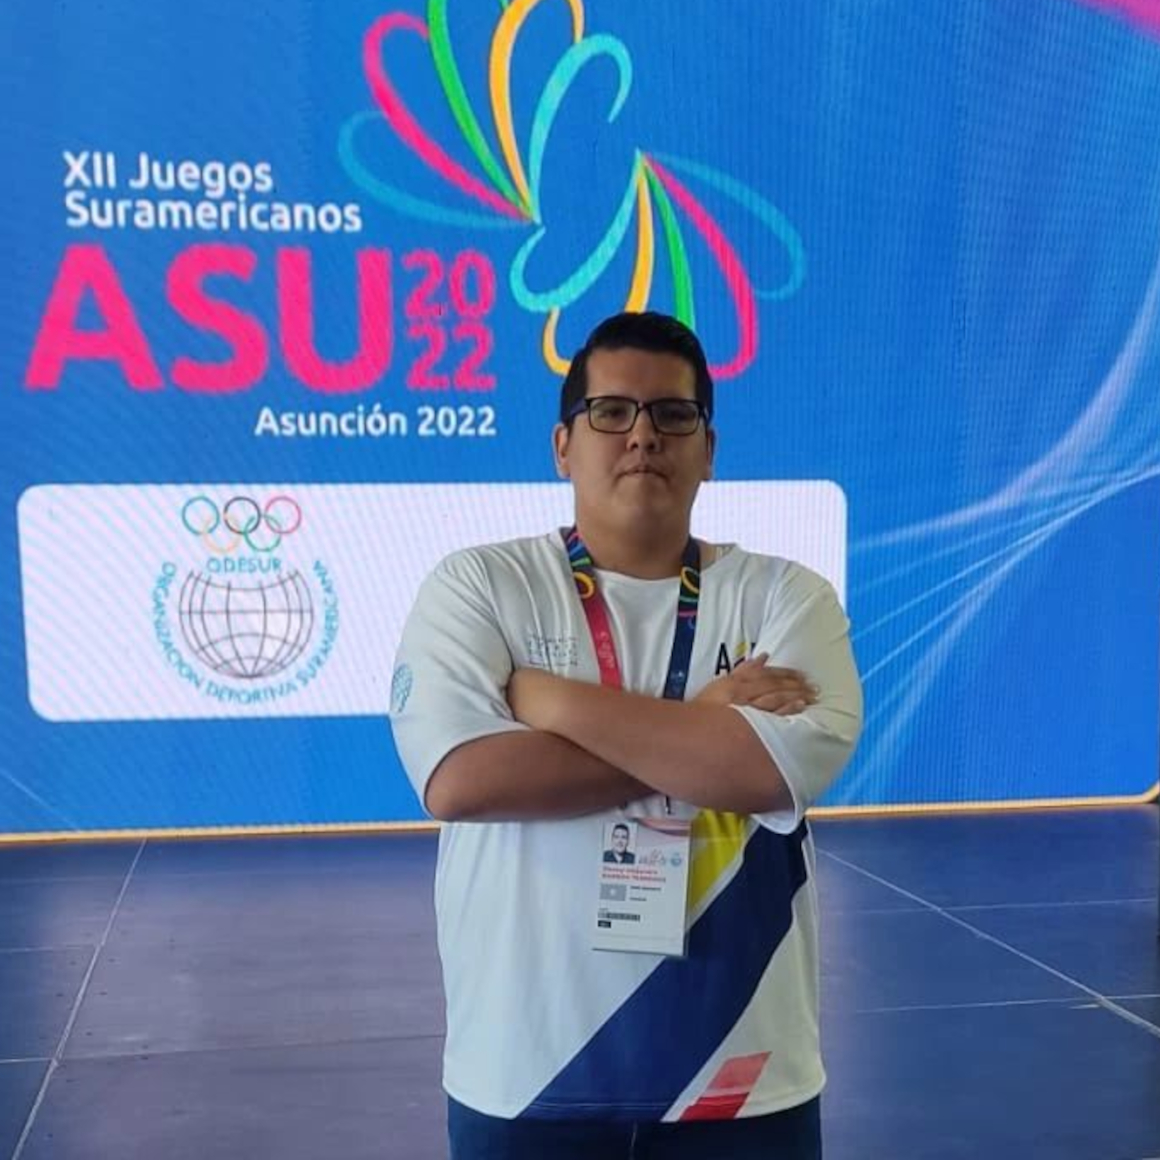 El ecuatoriano Jimmy Barros, en los Juegos Suramericanos de Asunción 2022.